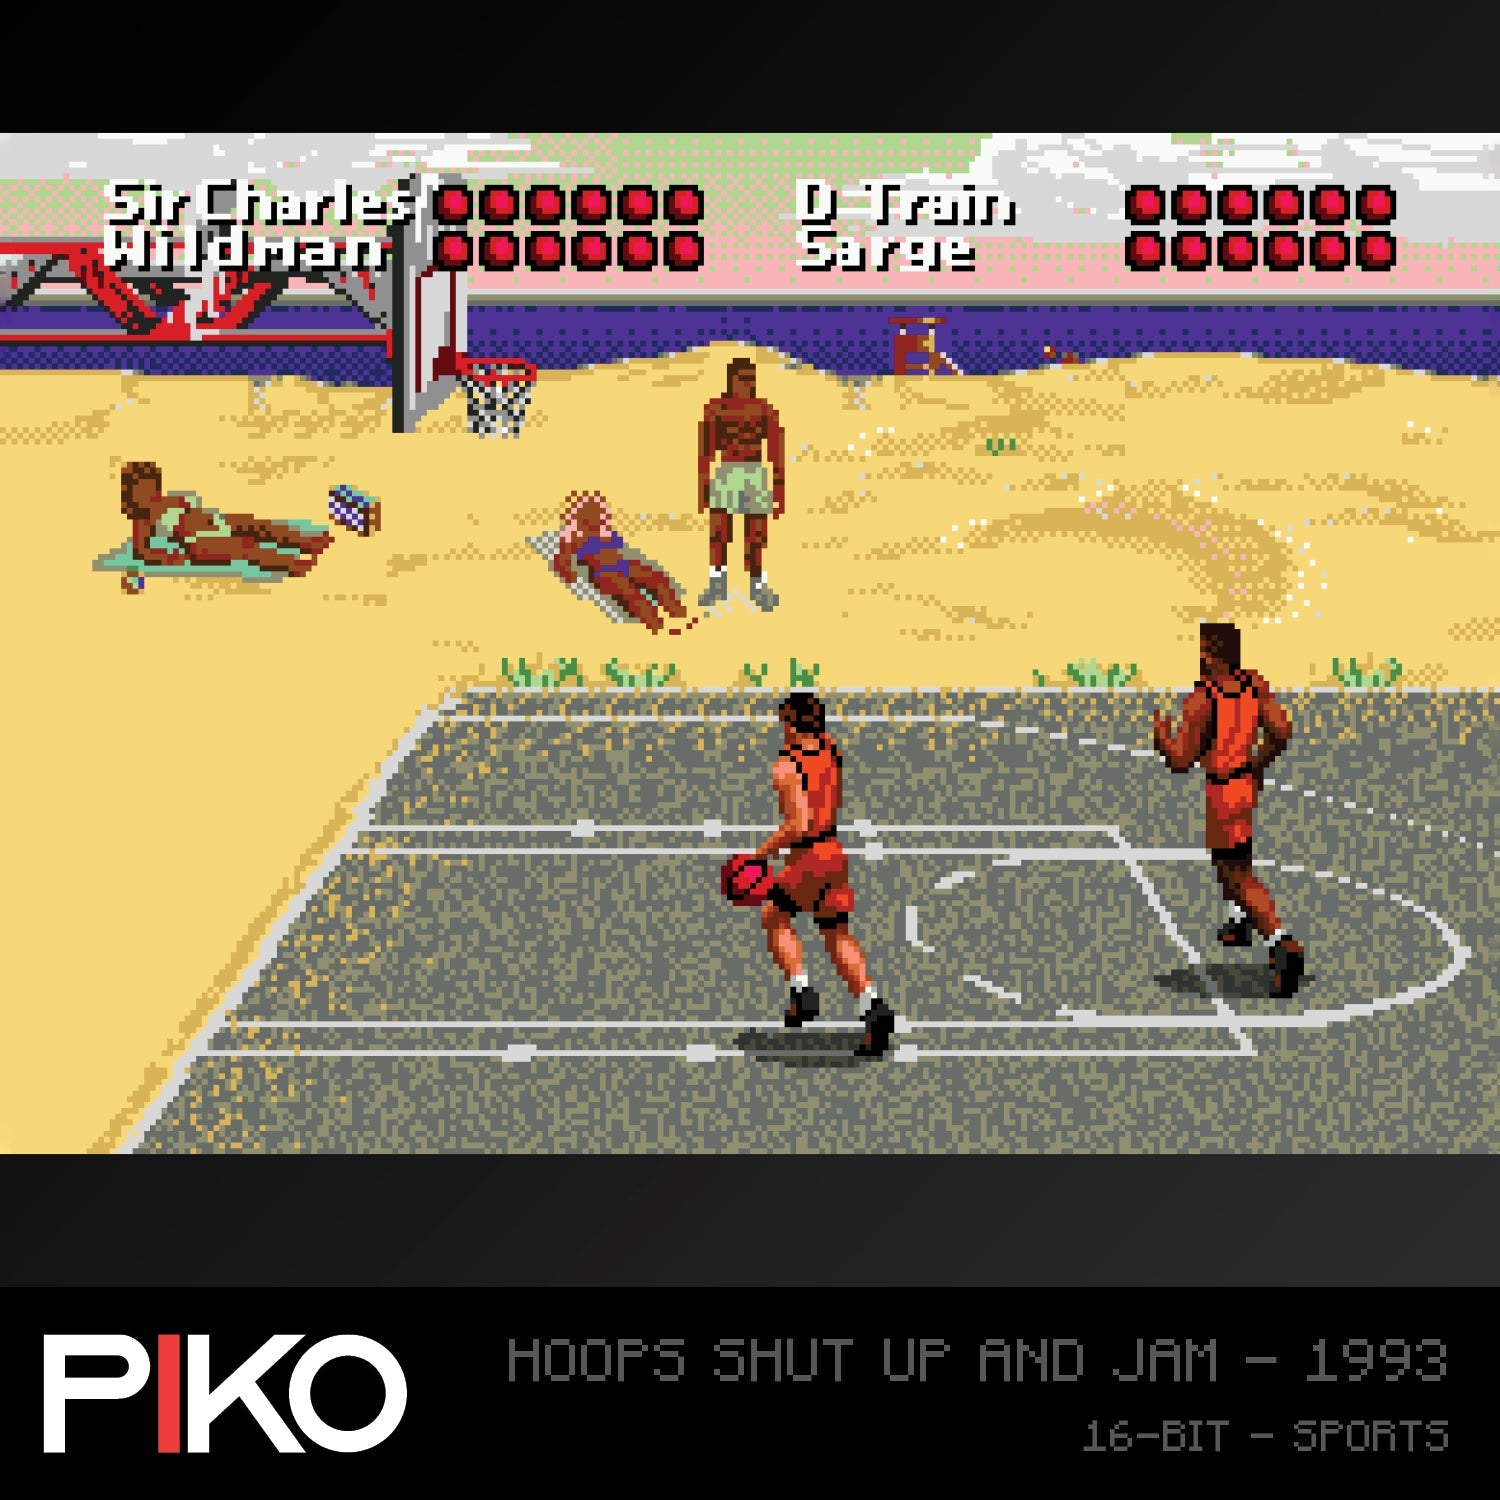 #16 Piko Interactive 2 - Evercade Cartridge